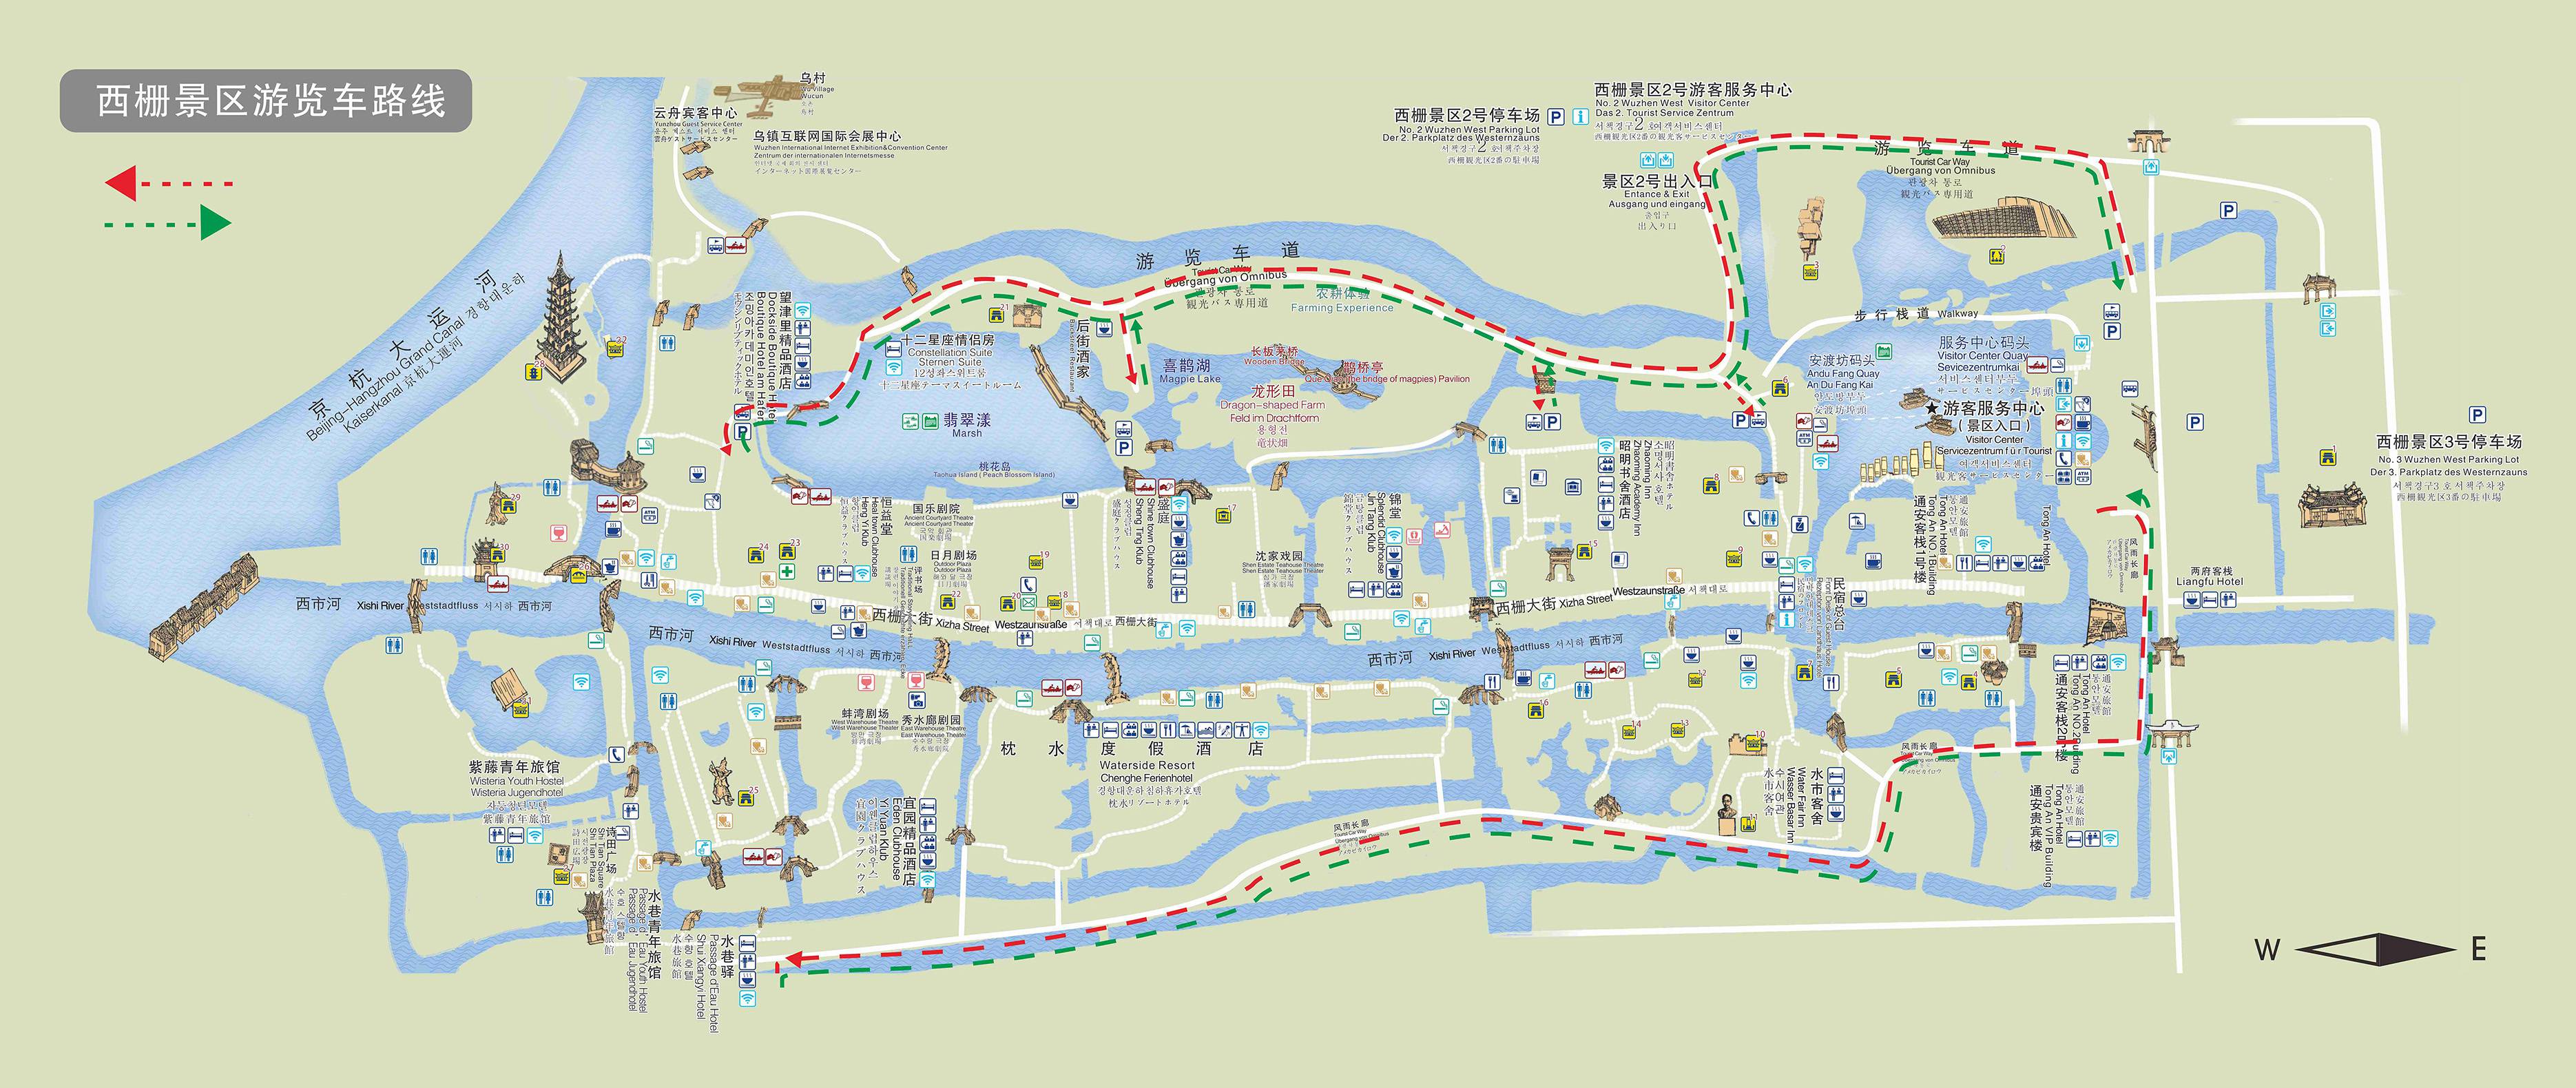 乌镇风景地图